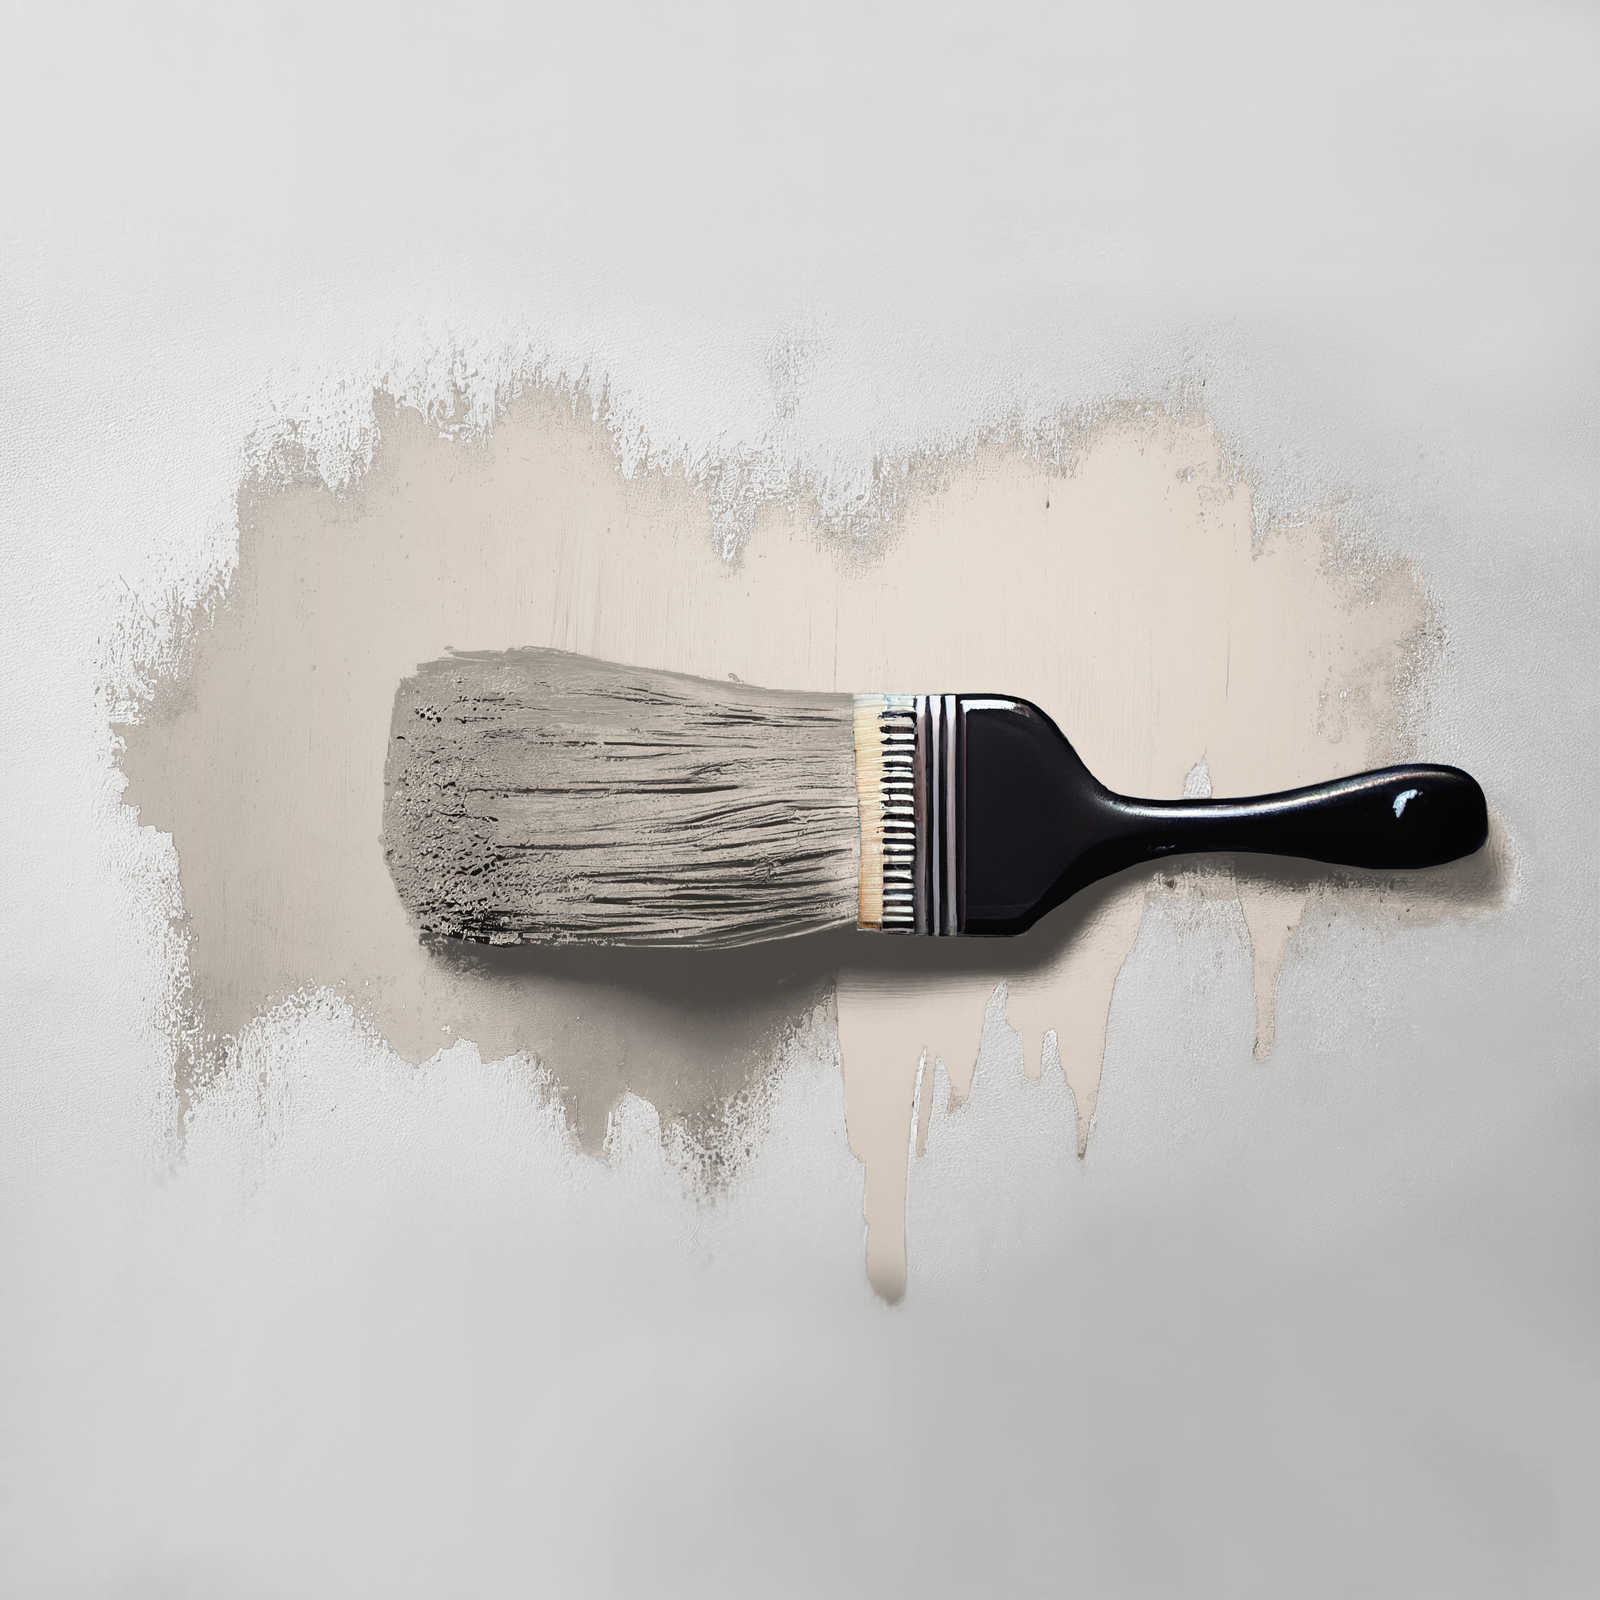             Pittura murale TCK6018 »Pure Potato« in beige chiaro casalingo – 5,0 litri
        